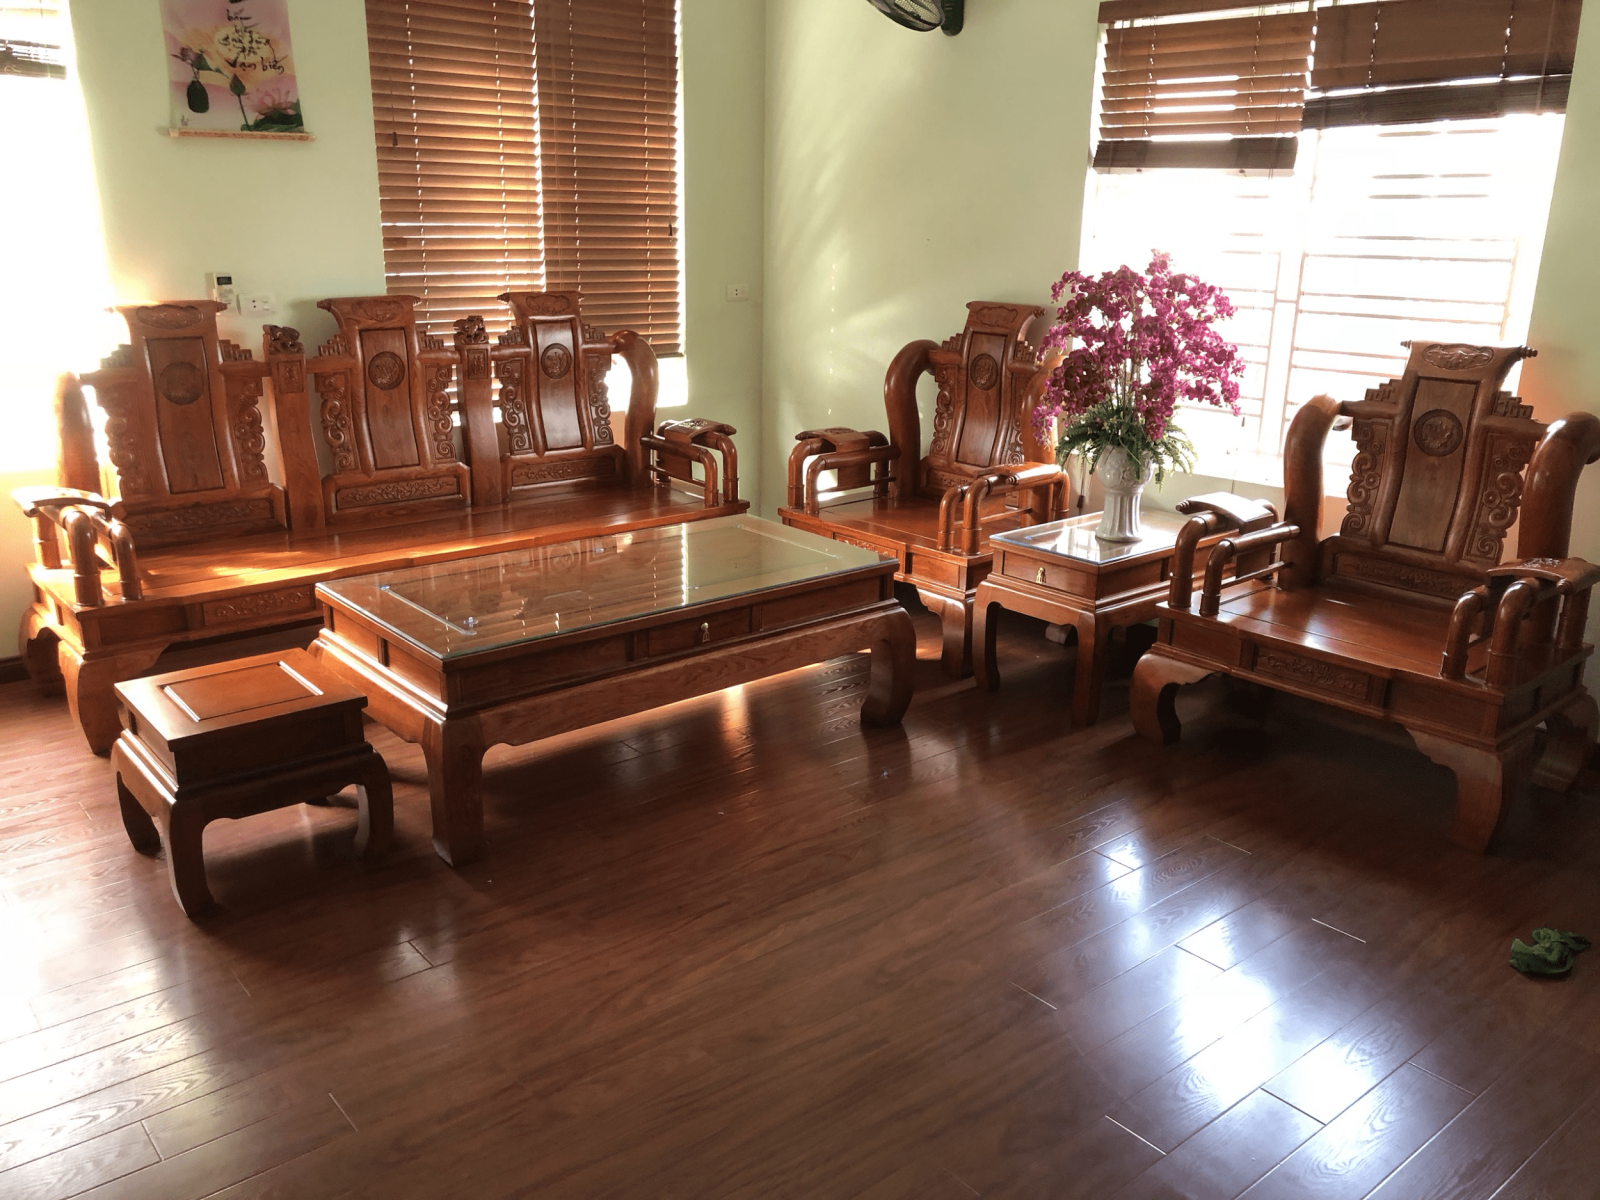 Bàn ghế phòng khách gỗ hương: Những bộ bàn ghế phòng khách gỗ hương mang đến cho ngôi nhà của bạn vẻ đẹp hoàn hảo và sang trọng. Những chiếc ghế êm ái và đặc biệt với màu sắc đẹp sẽ khiến không gian phòng khách trở nên ấm áp hơn và thu hút mọi ánh nhìn.